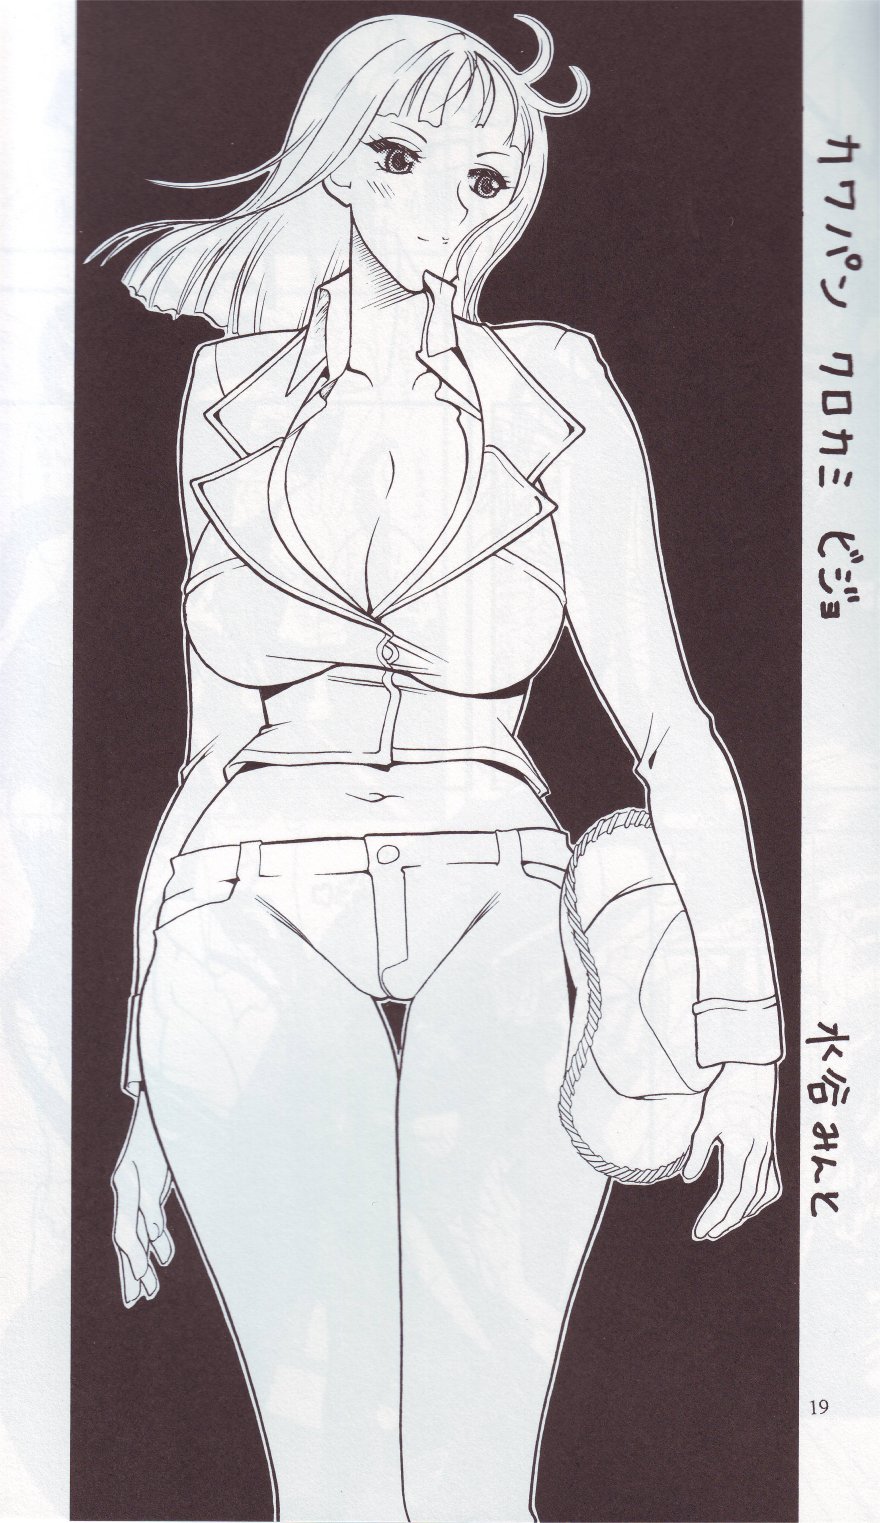 [SEMEDAIN G (Mizutani Mint, Mokkouyou Bond)] SEMEDAIN G WORKS vol.24 - Shuukan Shounen Jump Hon 4 (Bleach, One Piece) page 18 full